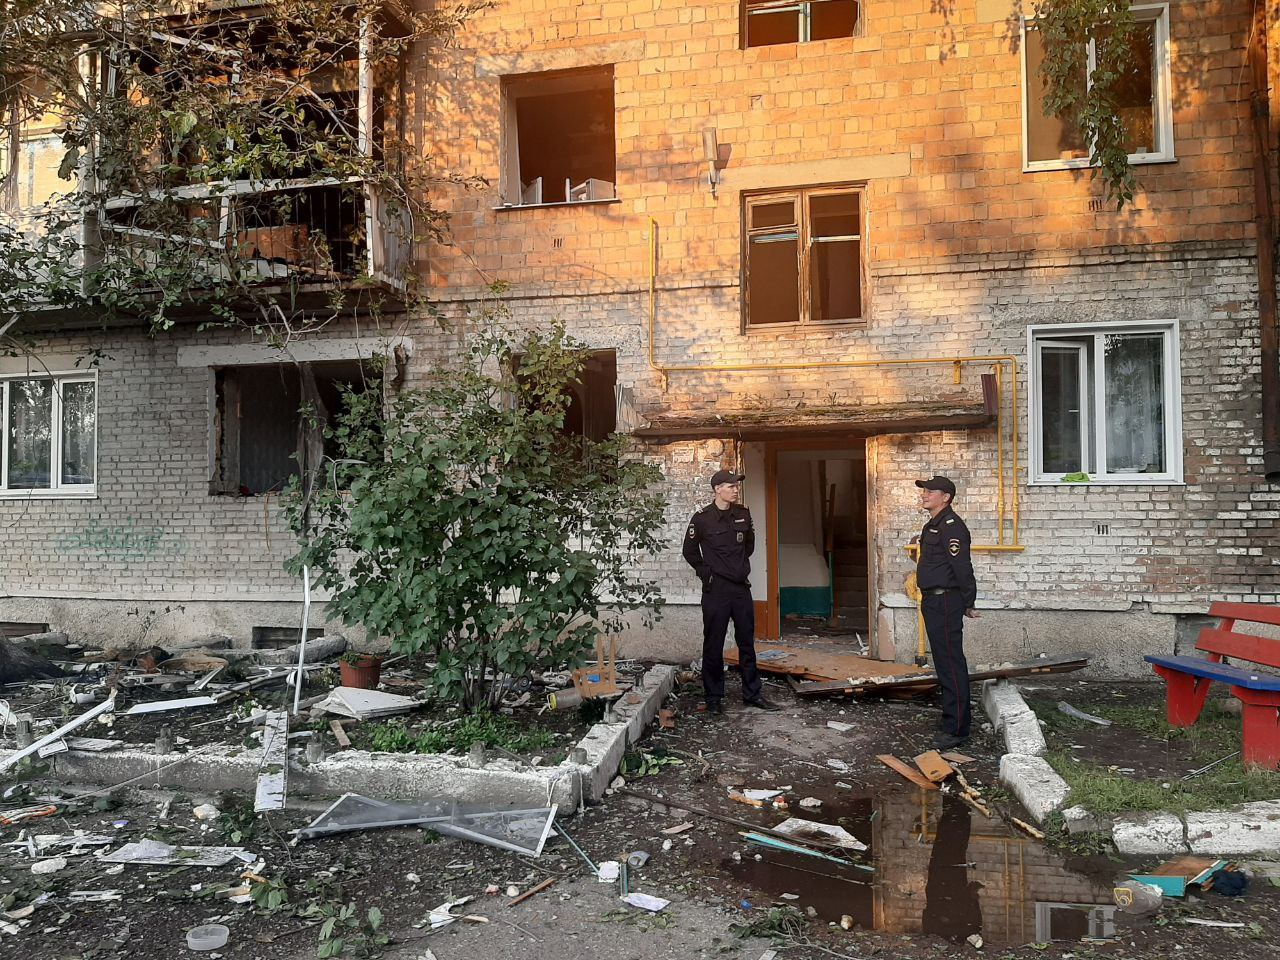 Полицейские будут охранять пострадавший от взрыва жилой дом в Канске, чтобы не допустить хищений из квартир